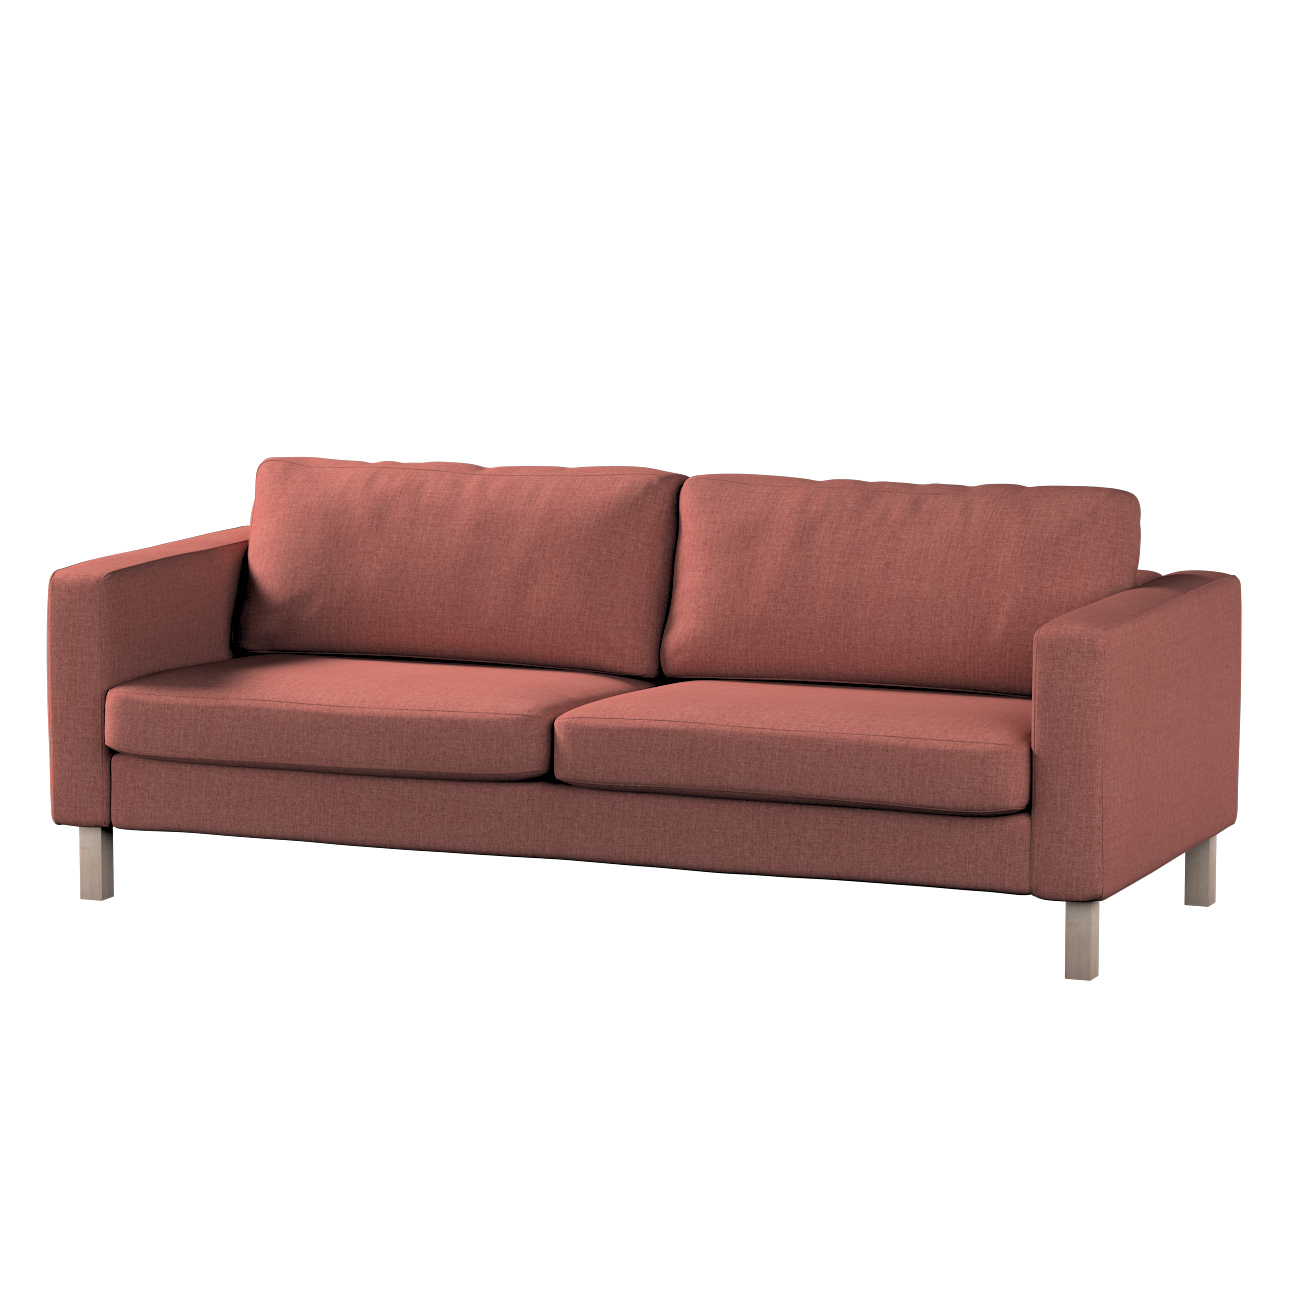 Bezug für Karlstad 3-Sitzer Sofa nicht ausklappbar, kurz, cognac braun, Bez günstig online kaufen